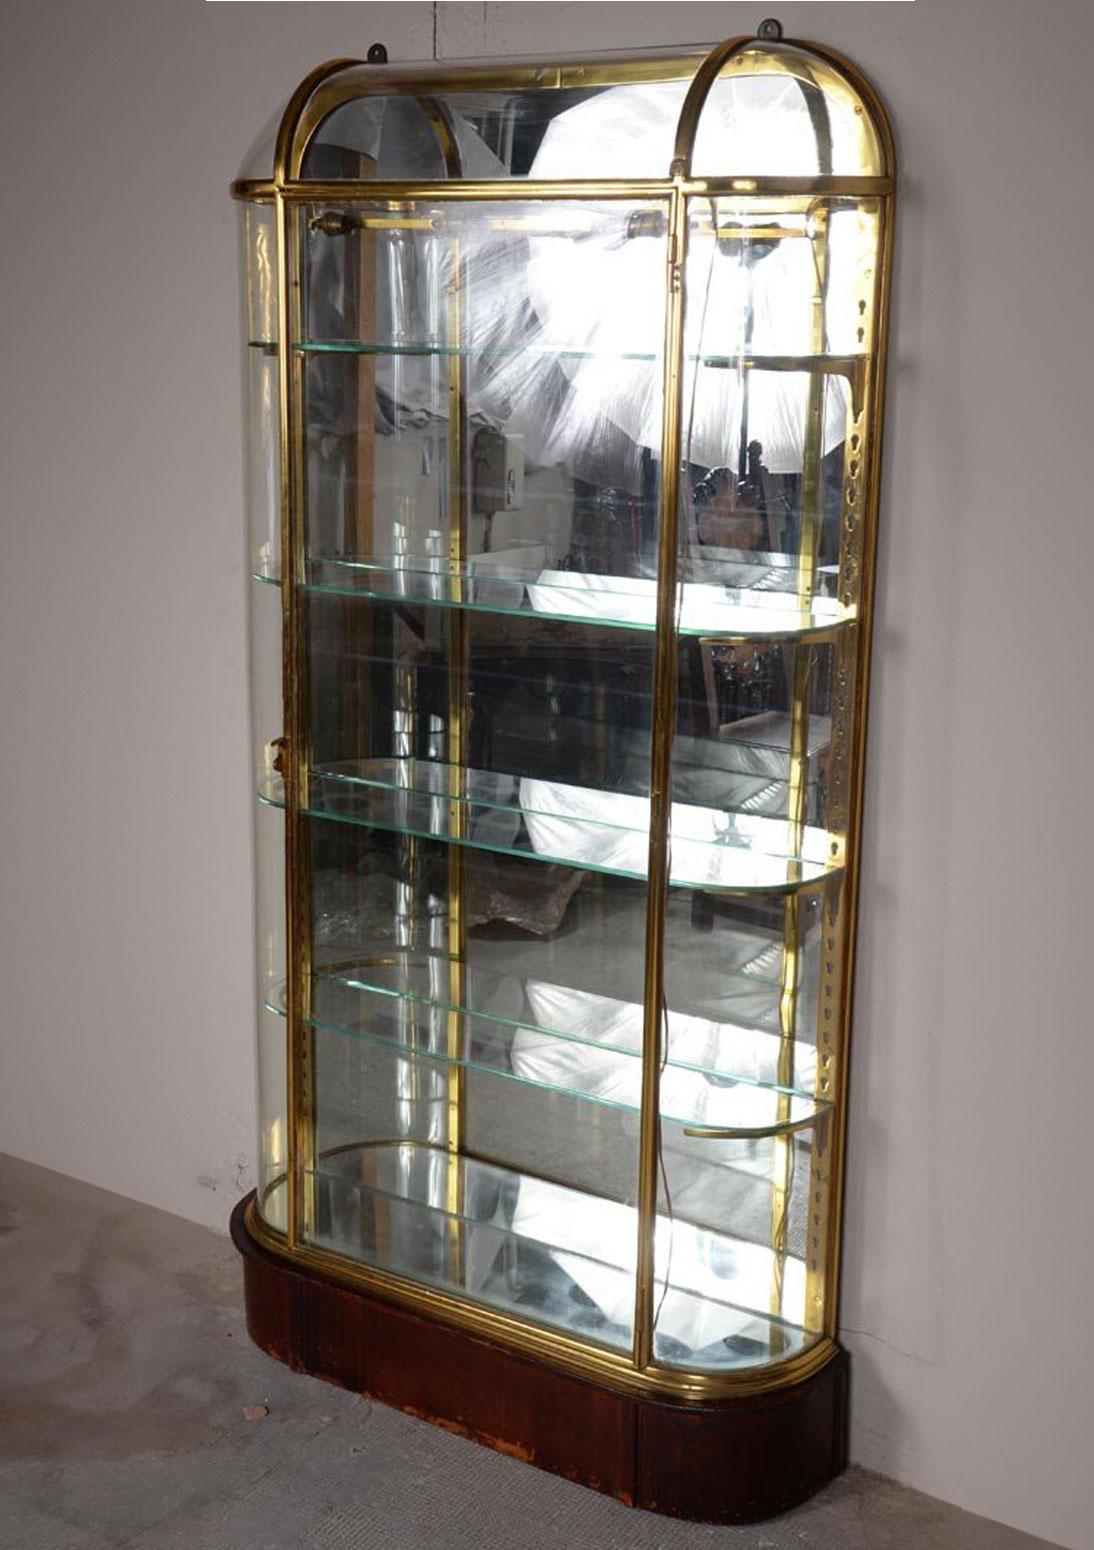 Vitrinenschrank für Geschäft oder Sammler mit vier Etagen, hergestellt aus Messing und Glas zu Beginn des 20. Jahrhunderts. Der Sockel ist aus Nussbaumholz mit Mahagonipatina.